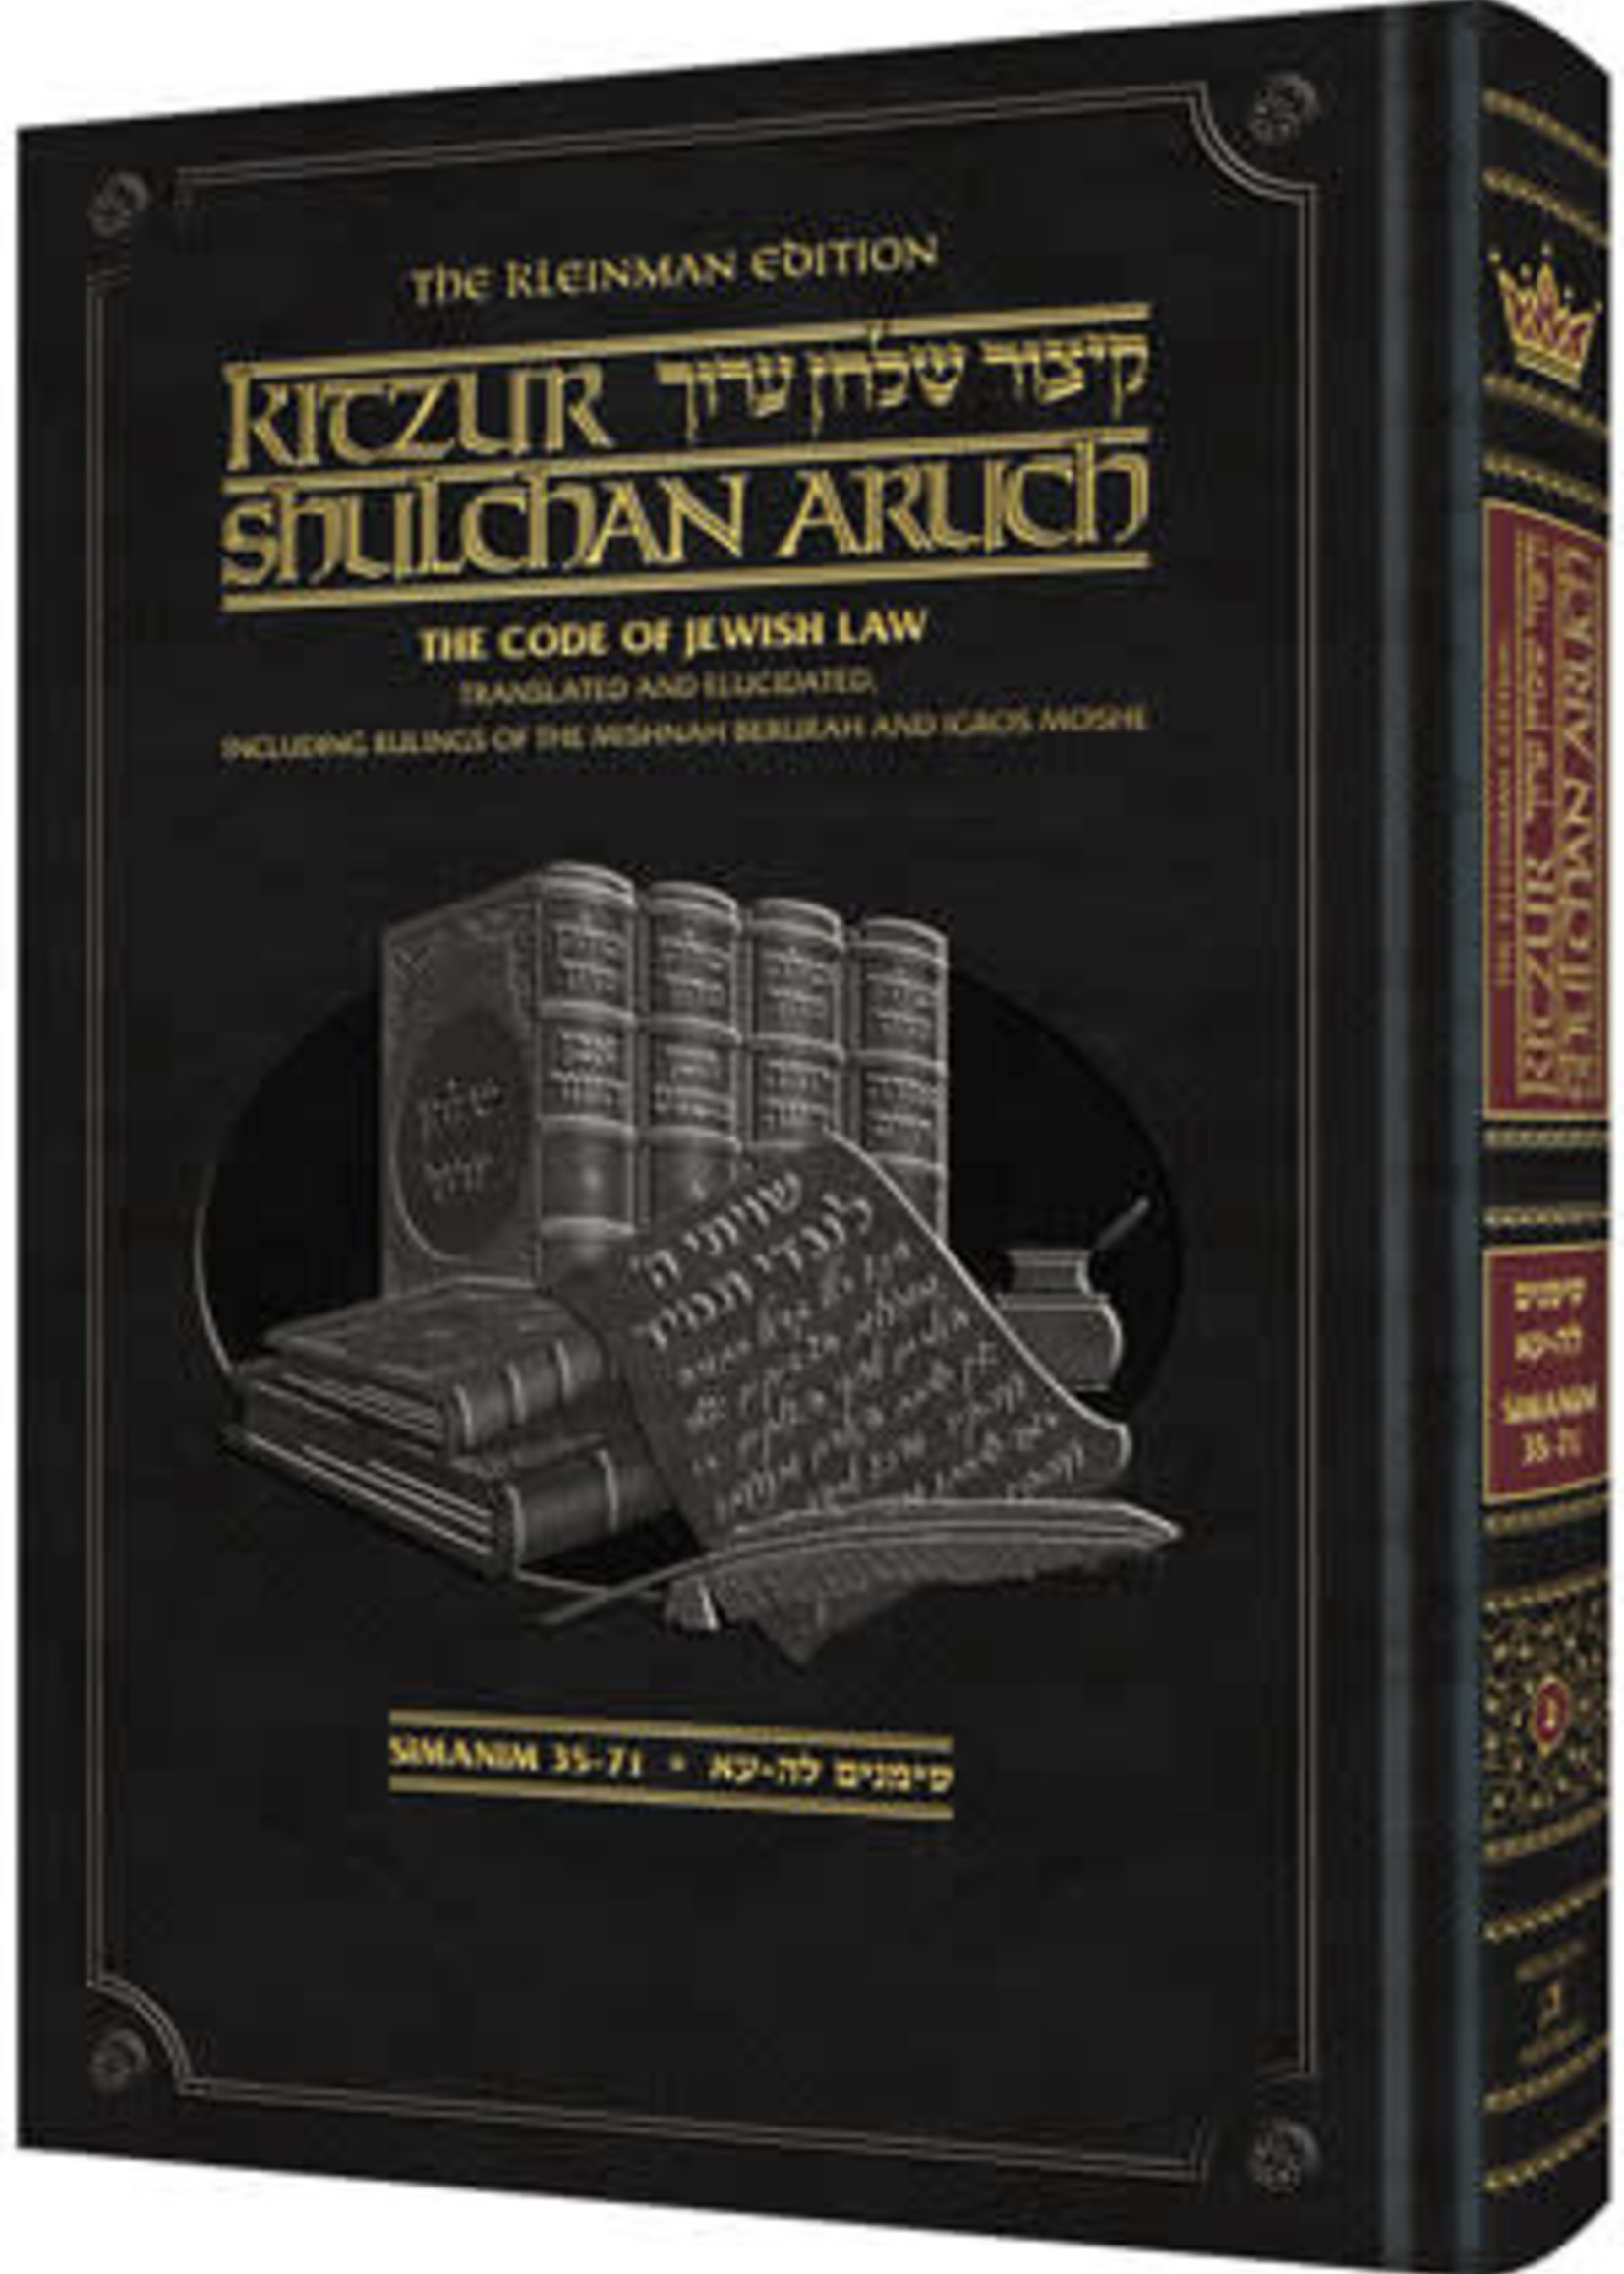 The Kleinman Edition Kitzur Shulchan Aruch - Code of Jewish Law Volume 2